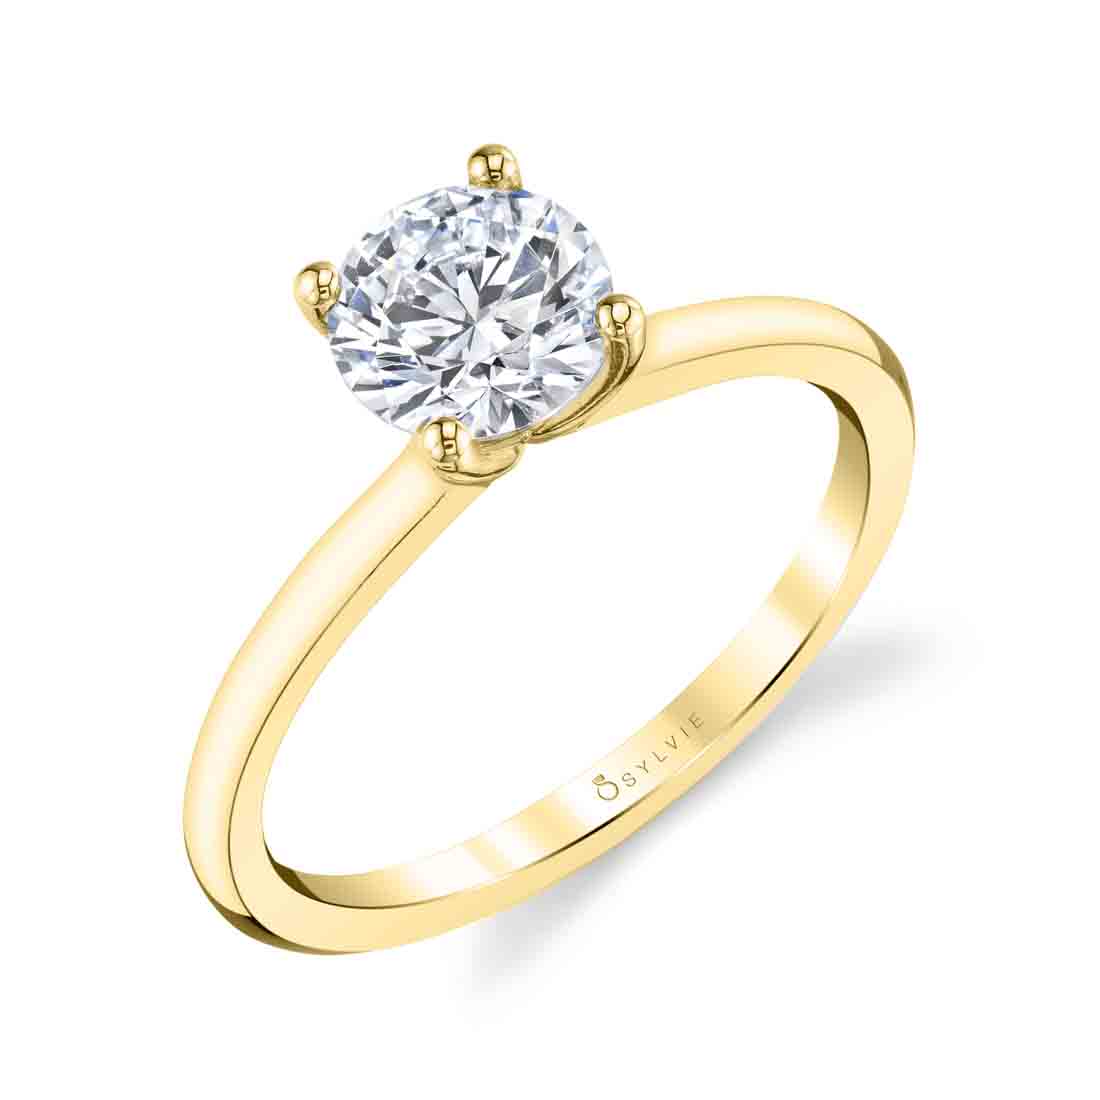 Dominique Solitaire Diamond Engagement Ring | Kranich's Inc